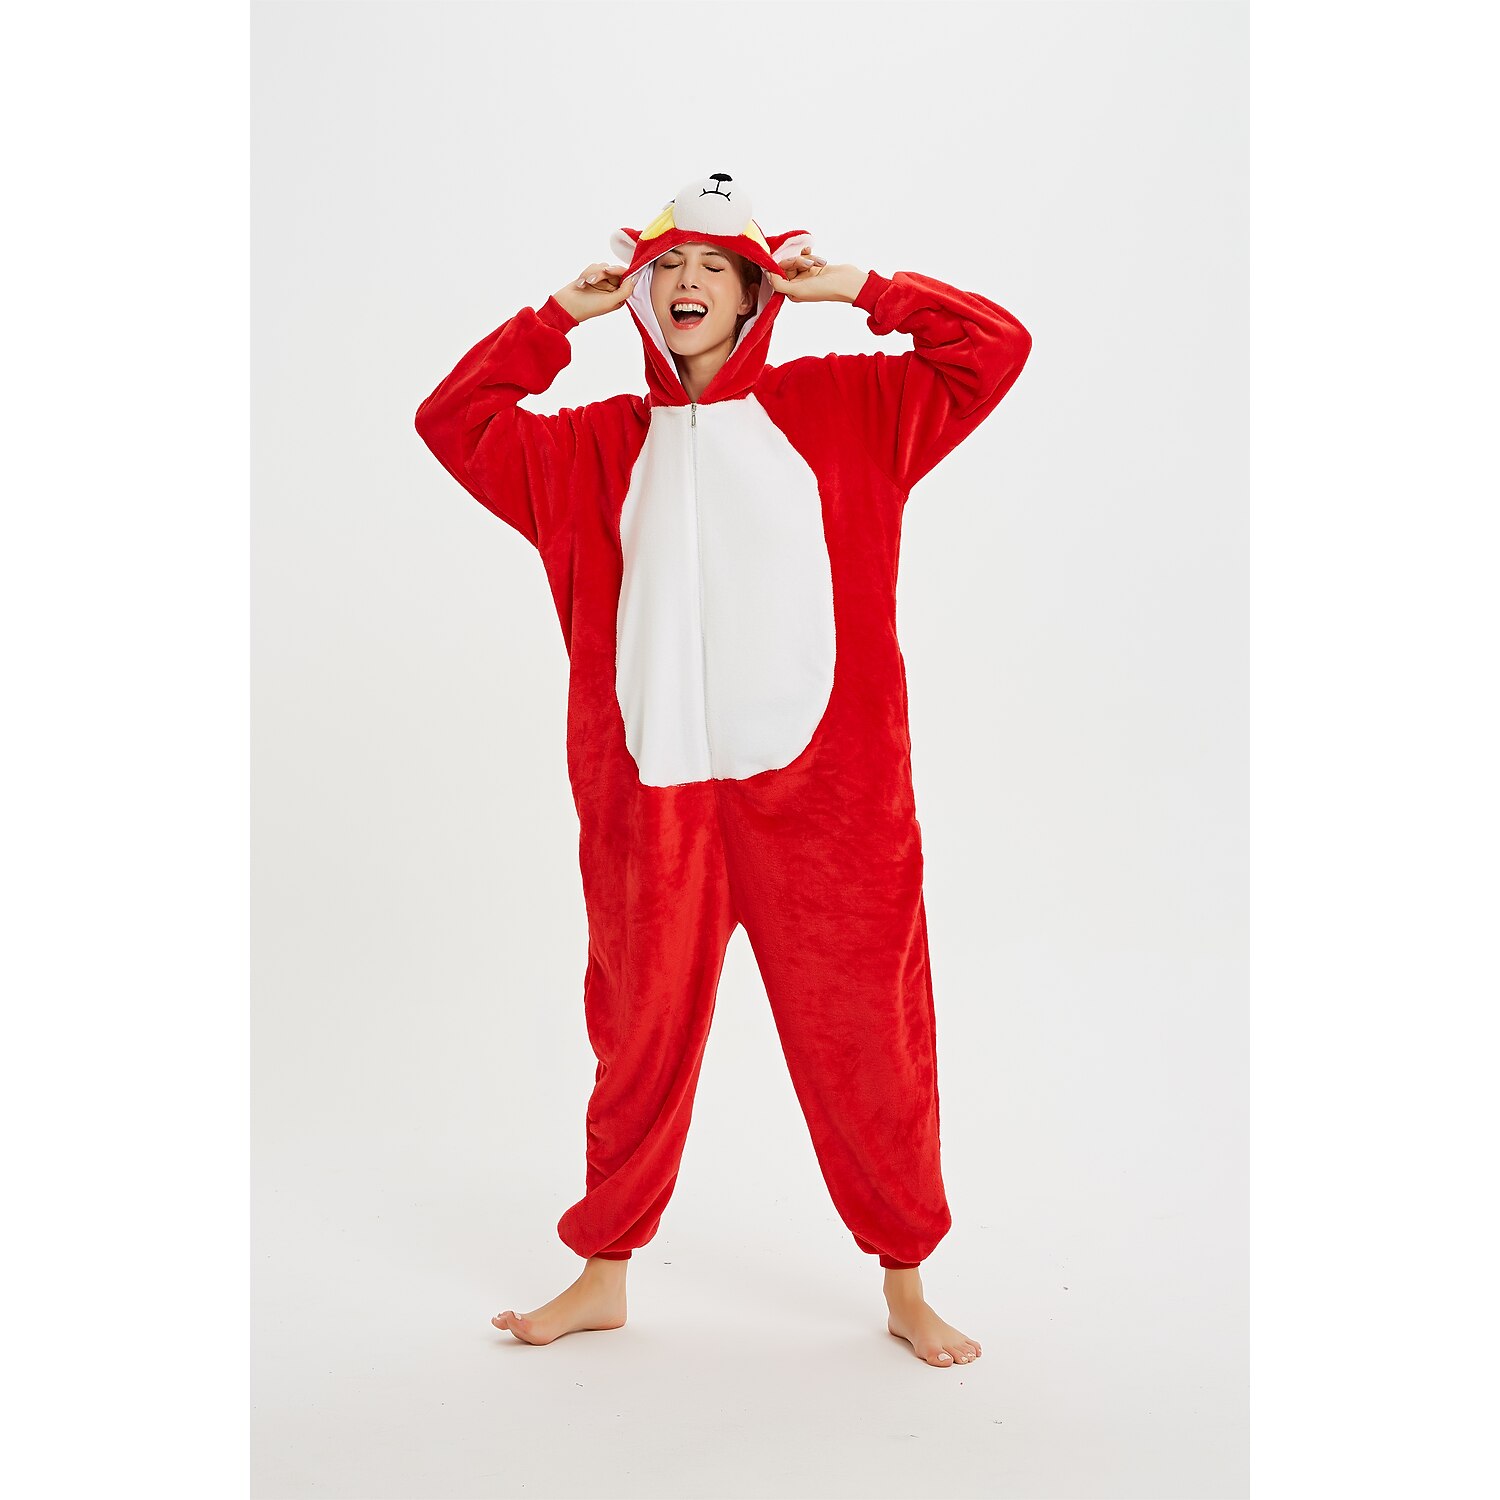 Unisex Adult Elephant Pajamas Halloween Costume Kigurumi Onesie Animal Sleepwear 